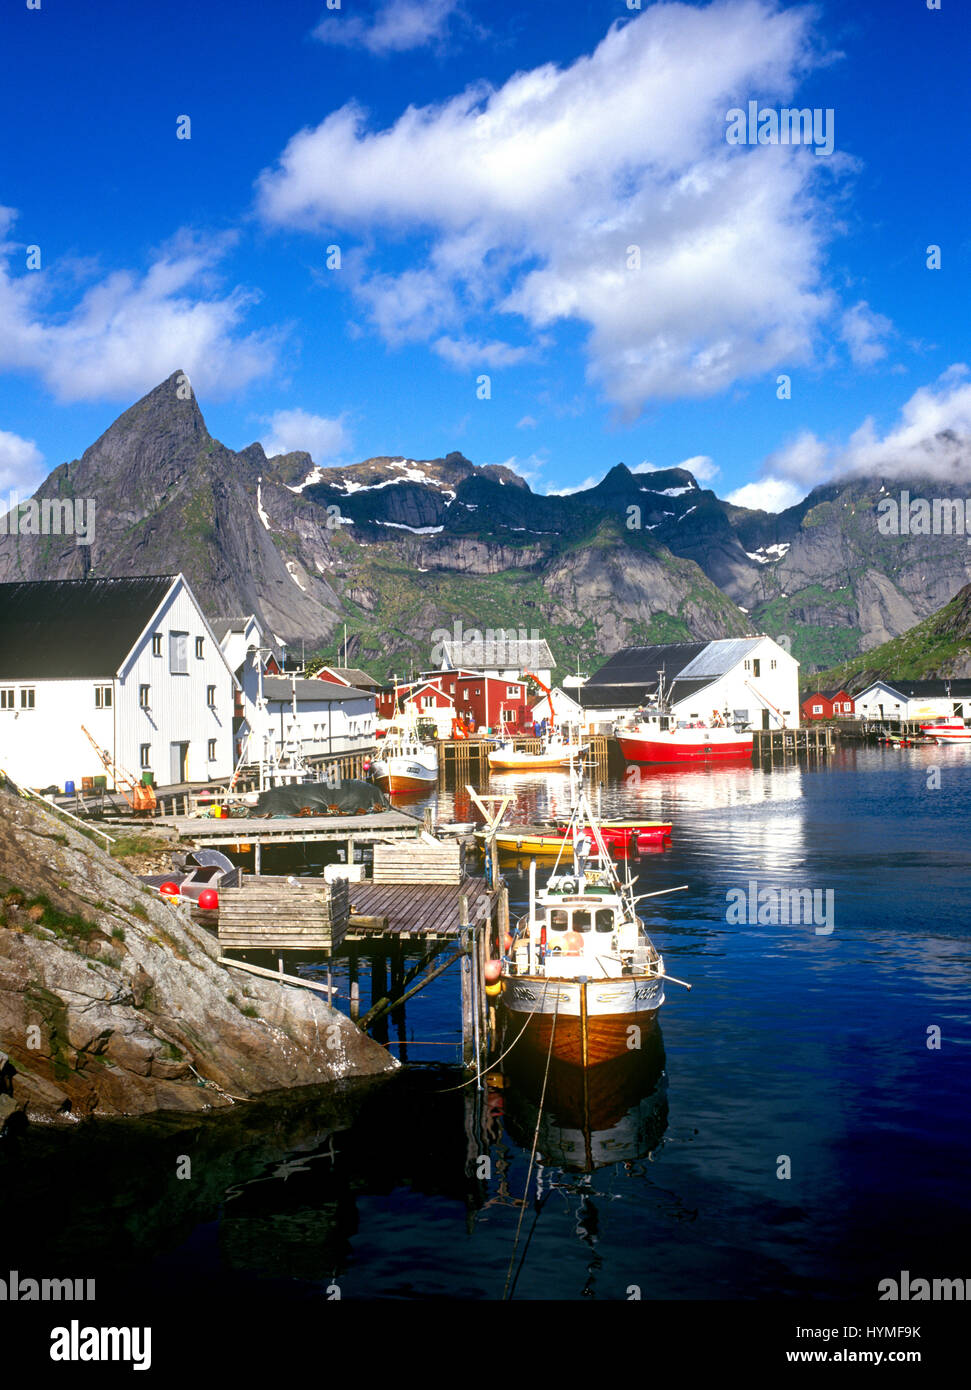 Reine village, Hamnoy, Moskenes, Isole Lofoten in Norvegia Foto Stock